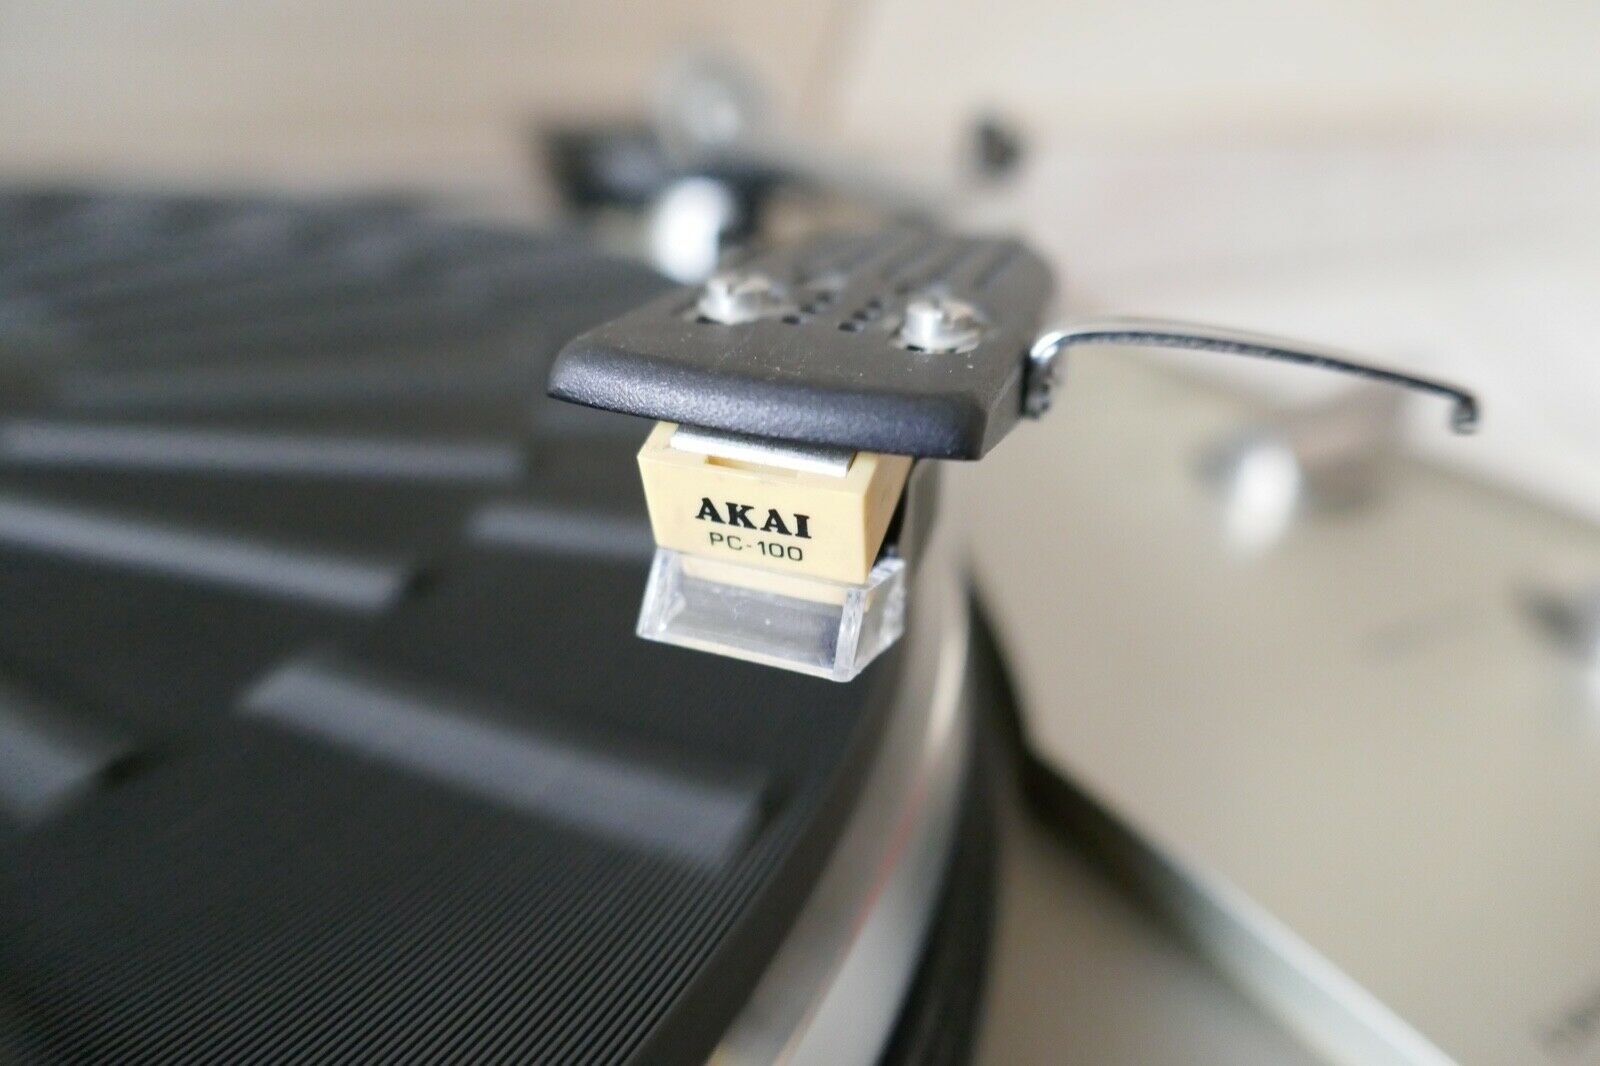 platine vinyle turntable akai AP-206C vintage occasion